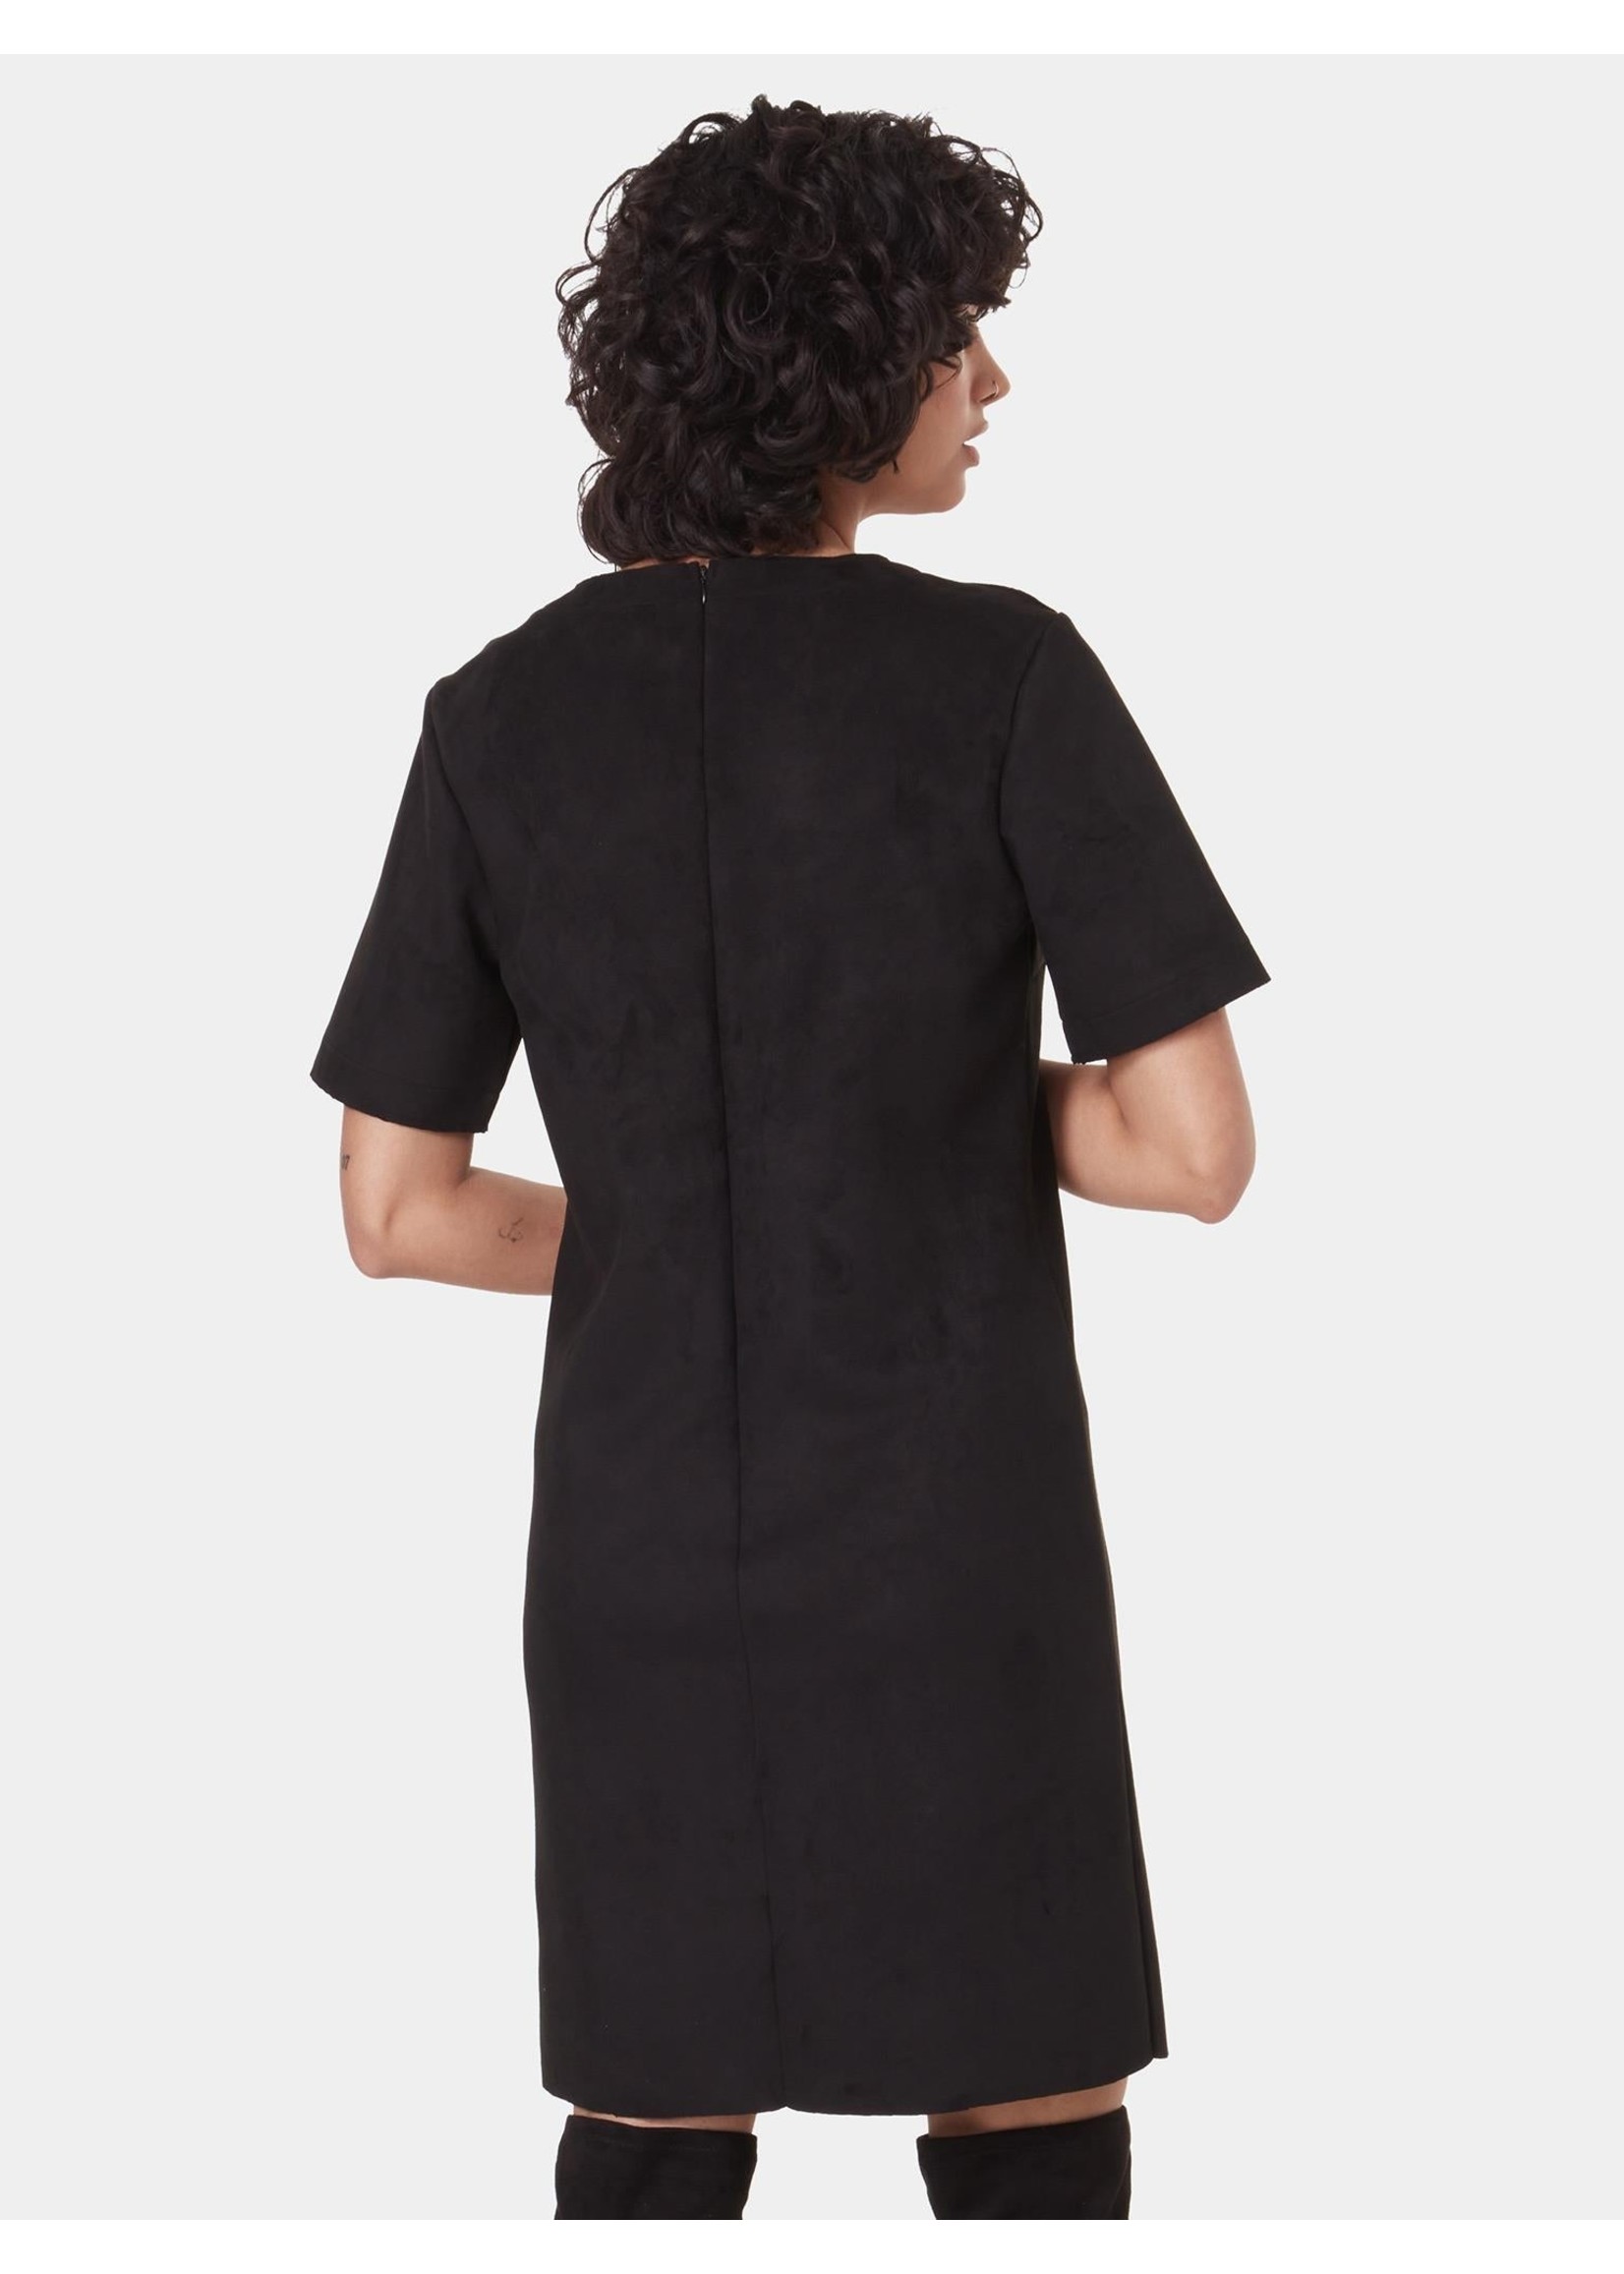 LOIS JEANS & JACKETS Women's Cecil suede dress Black